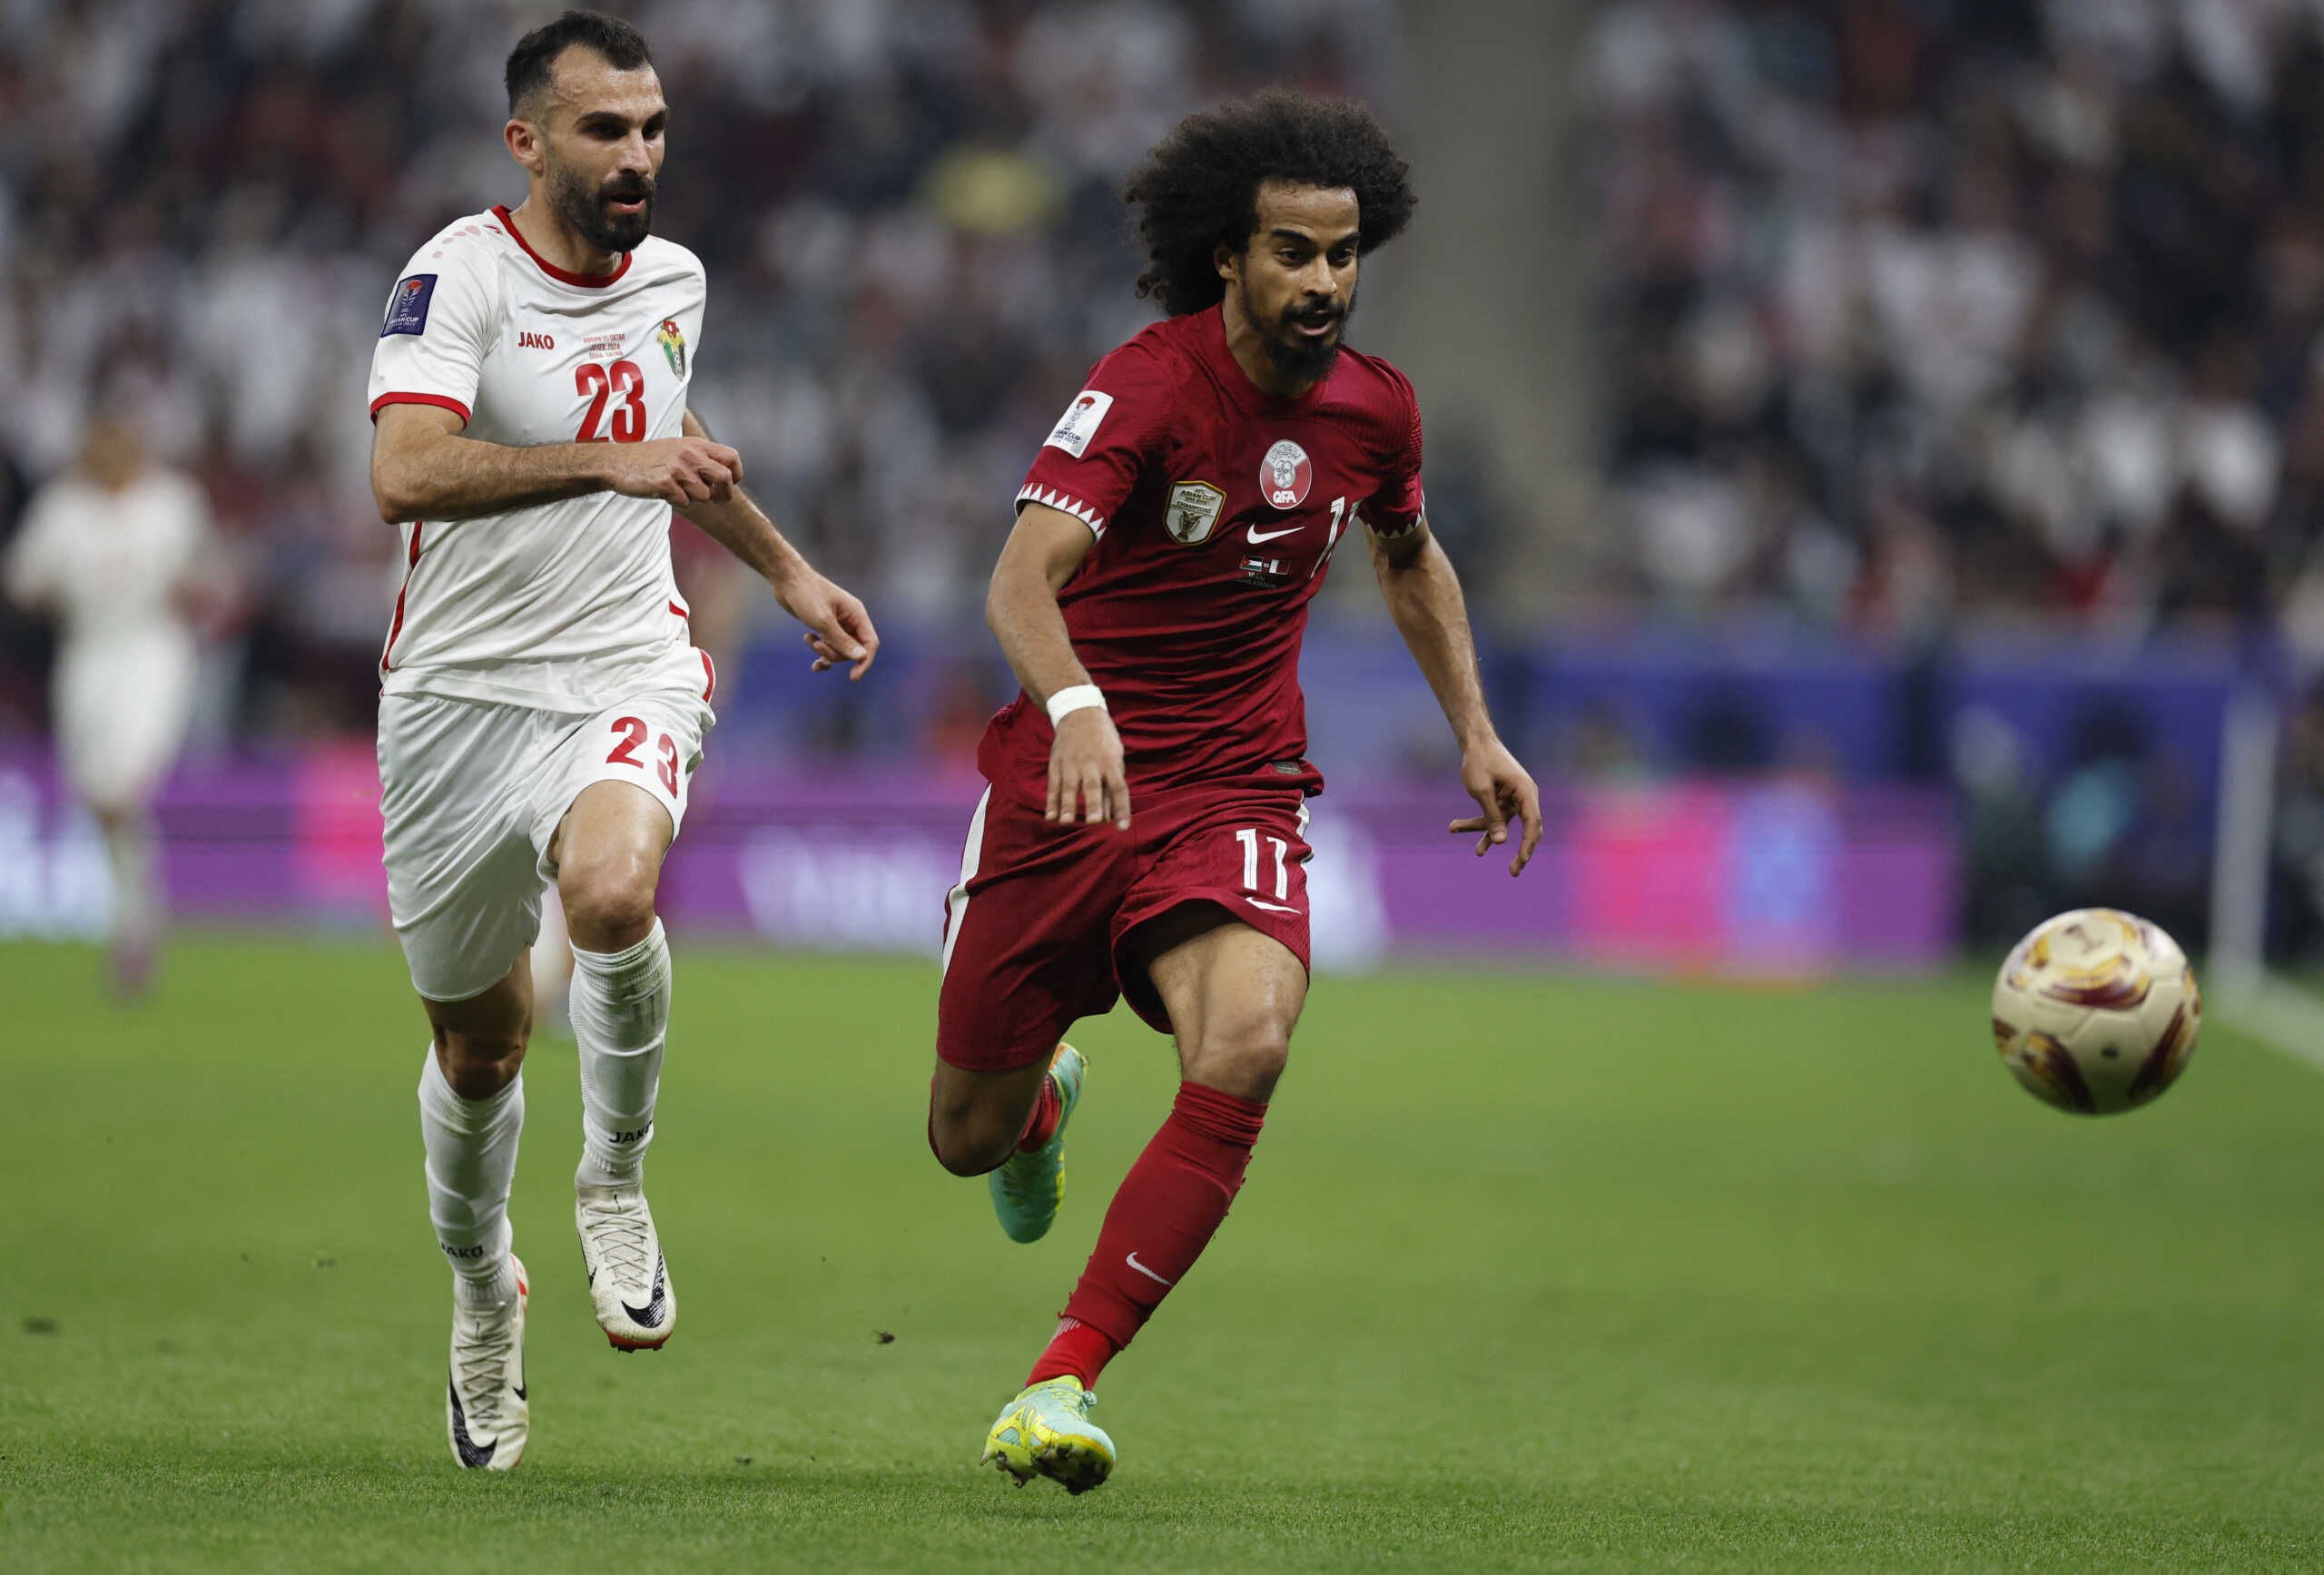 Ιορδανία – Κατάρ 1-3: Κατέκτησαν το Asian Cup οι Καταριανοί